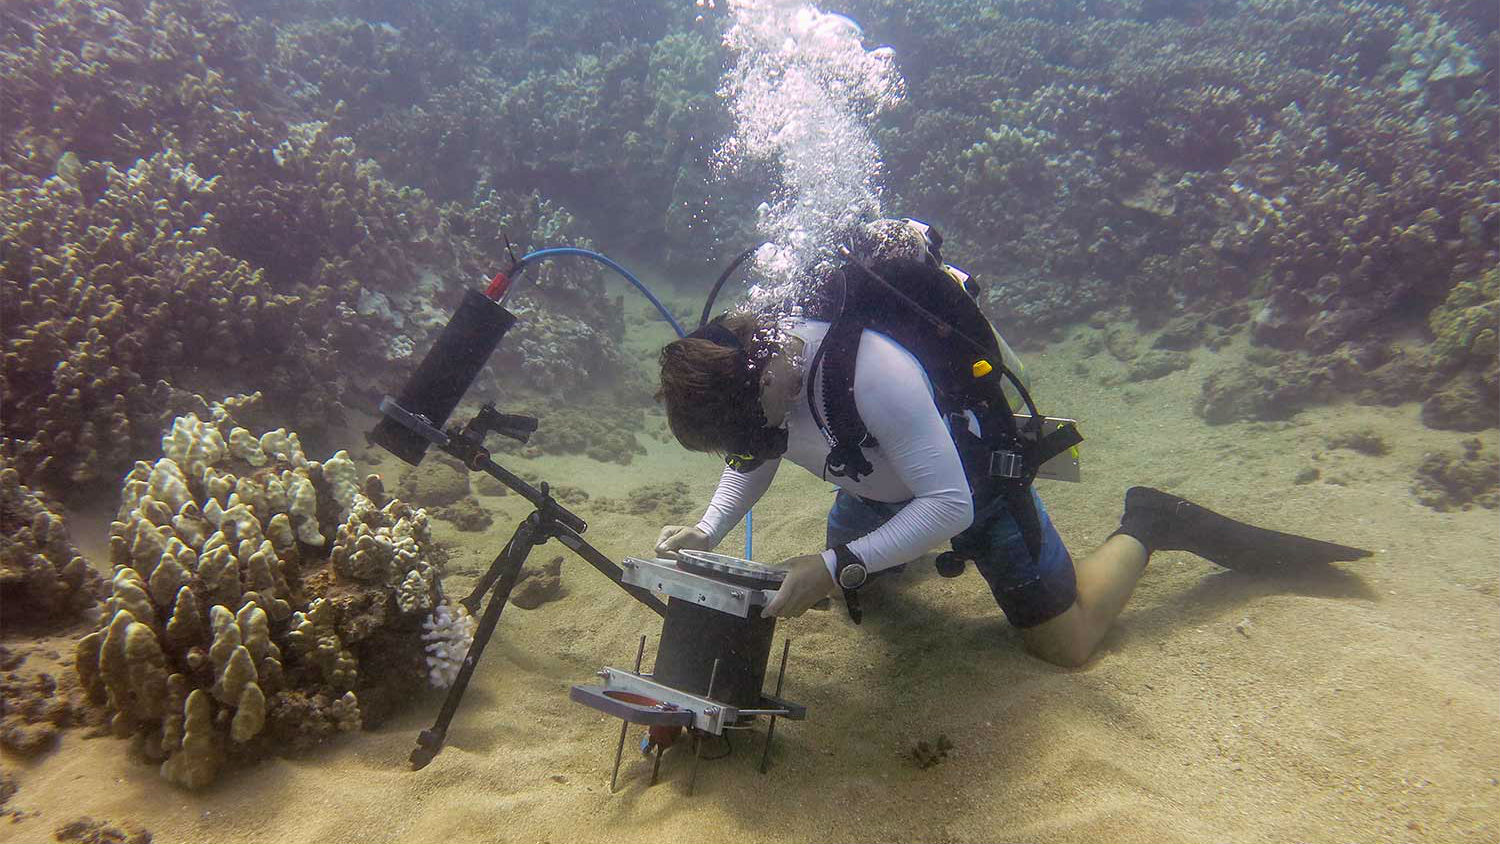 Underwater microscope